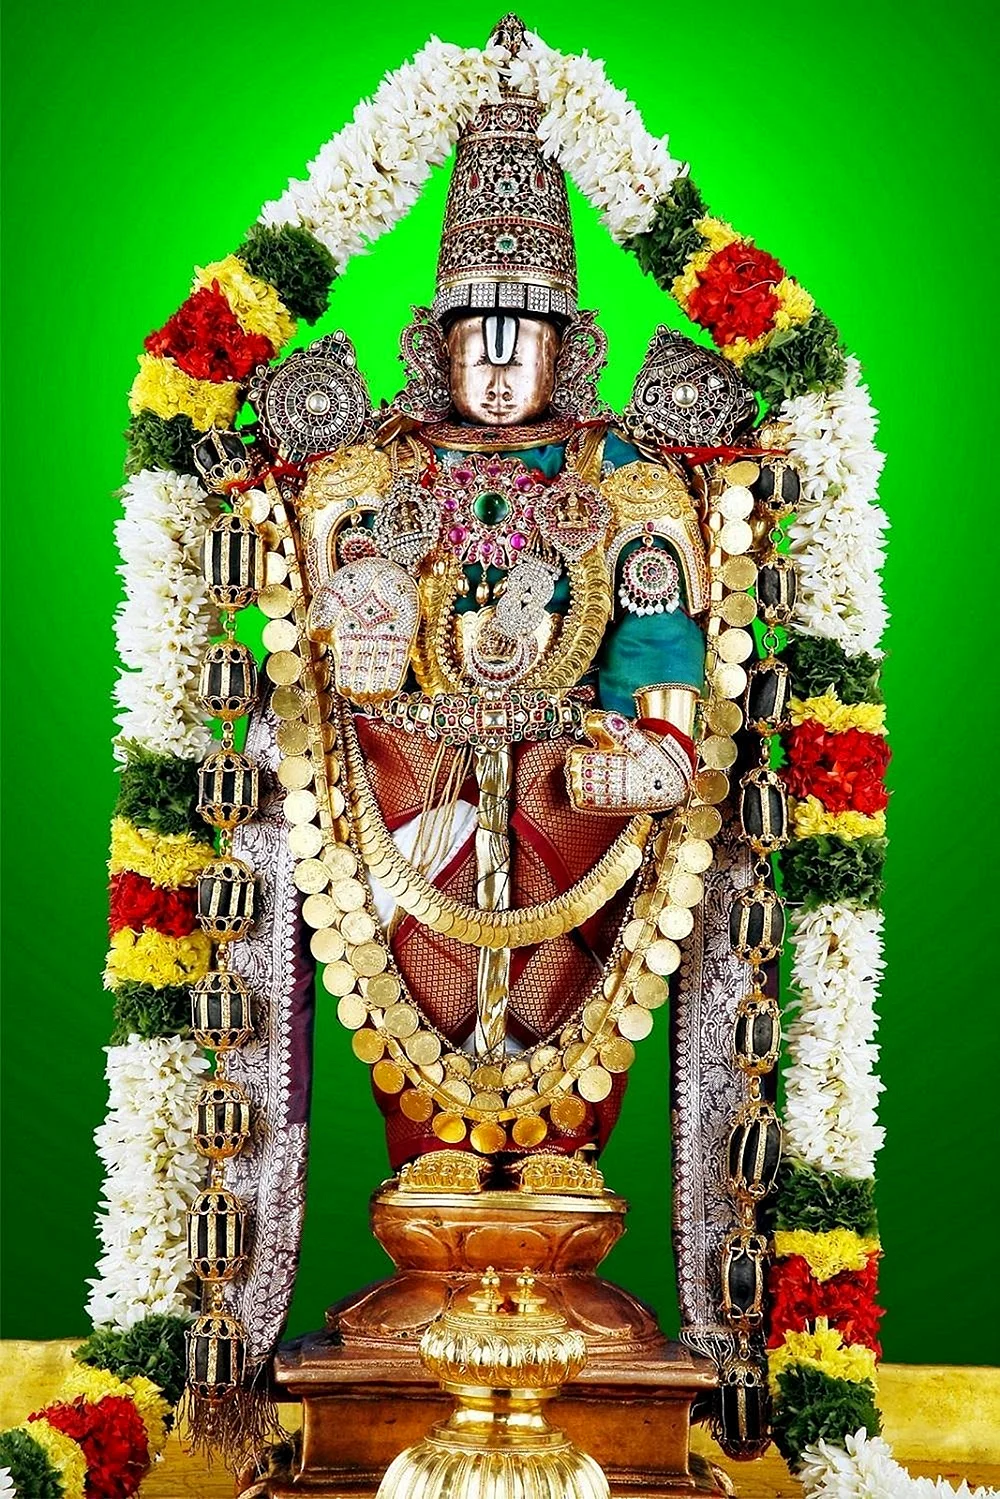 Lord Venkateswara Wallpaper